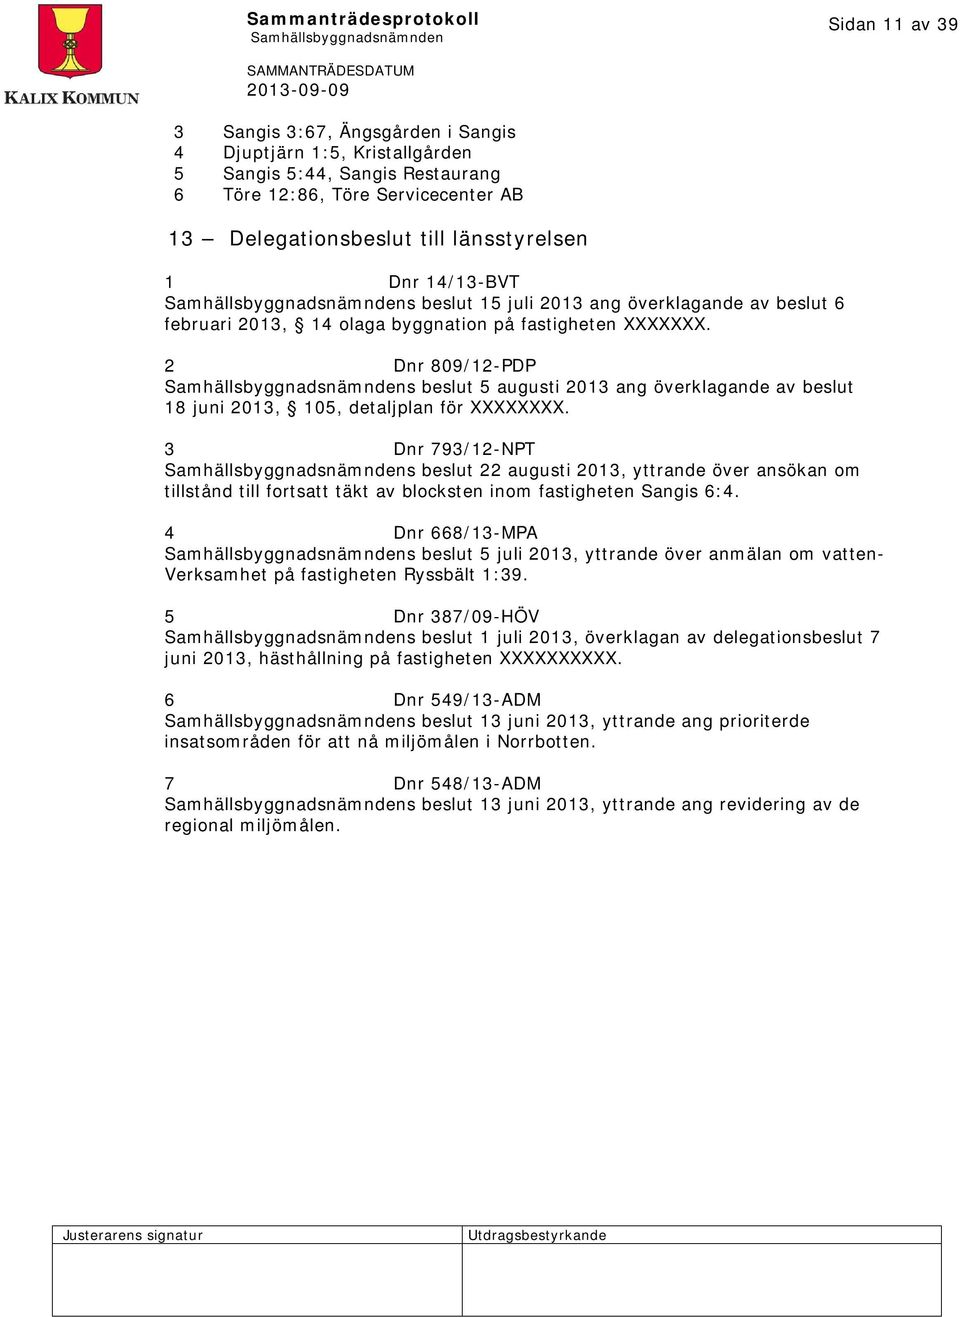 2 Dnr 809/12-PDP s beslut 5 augusti 2013 ang överklagande av beslut 18 juni 2013, 105, detaljplan för XXXXXXXX.